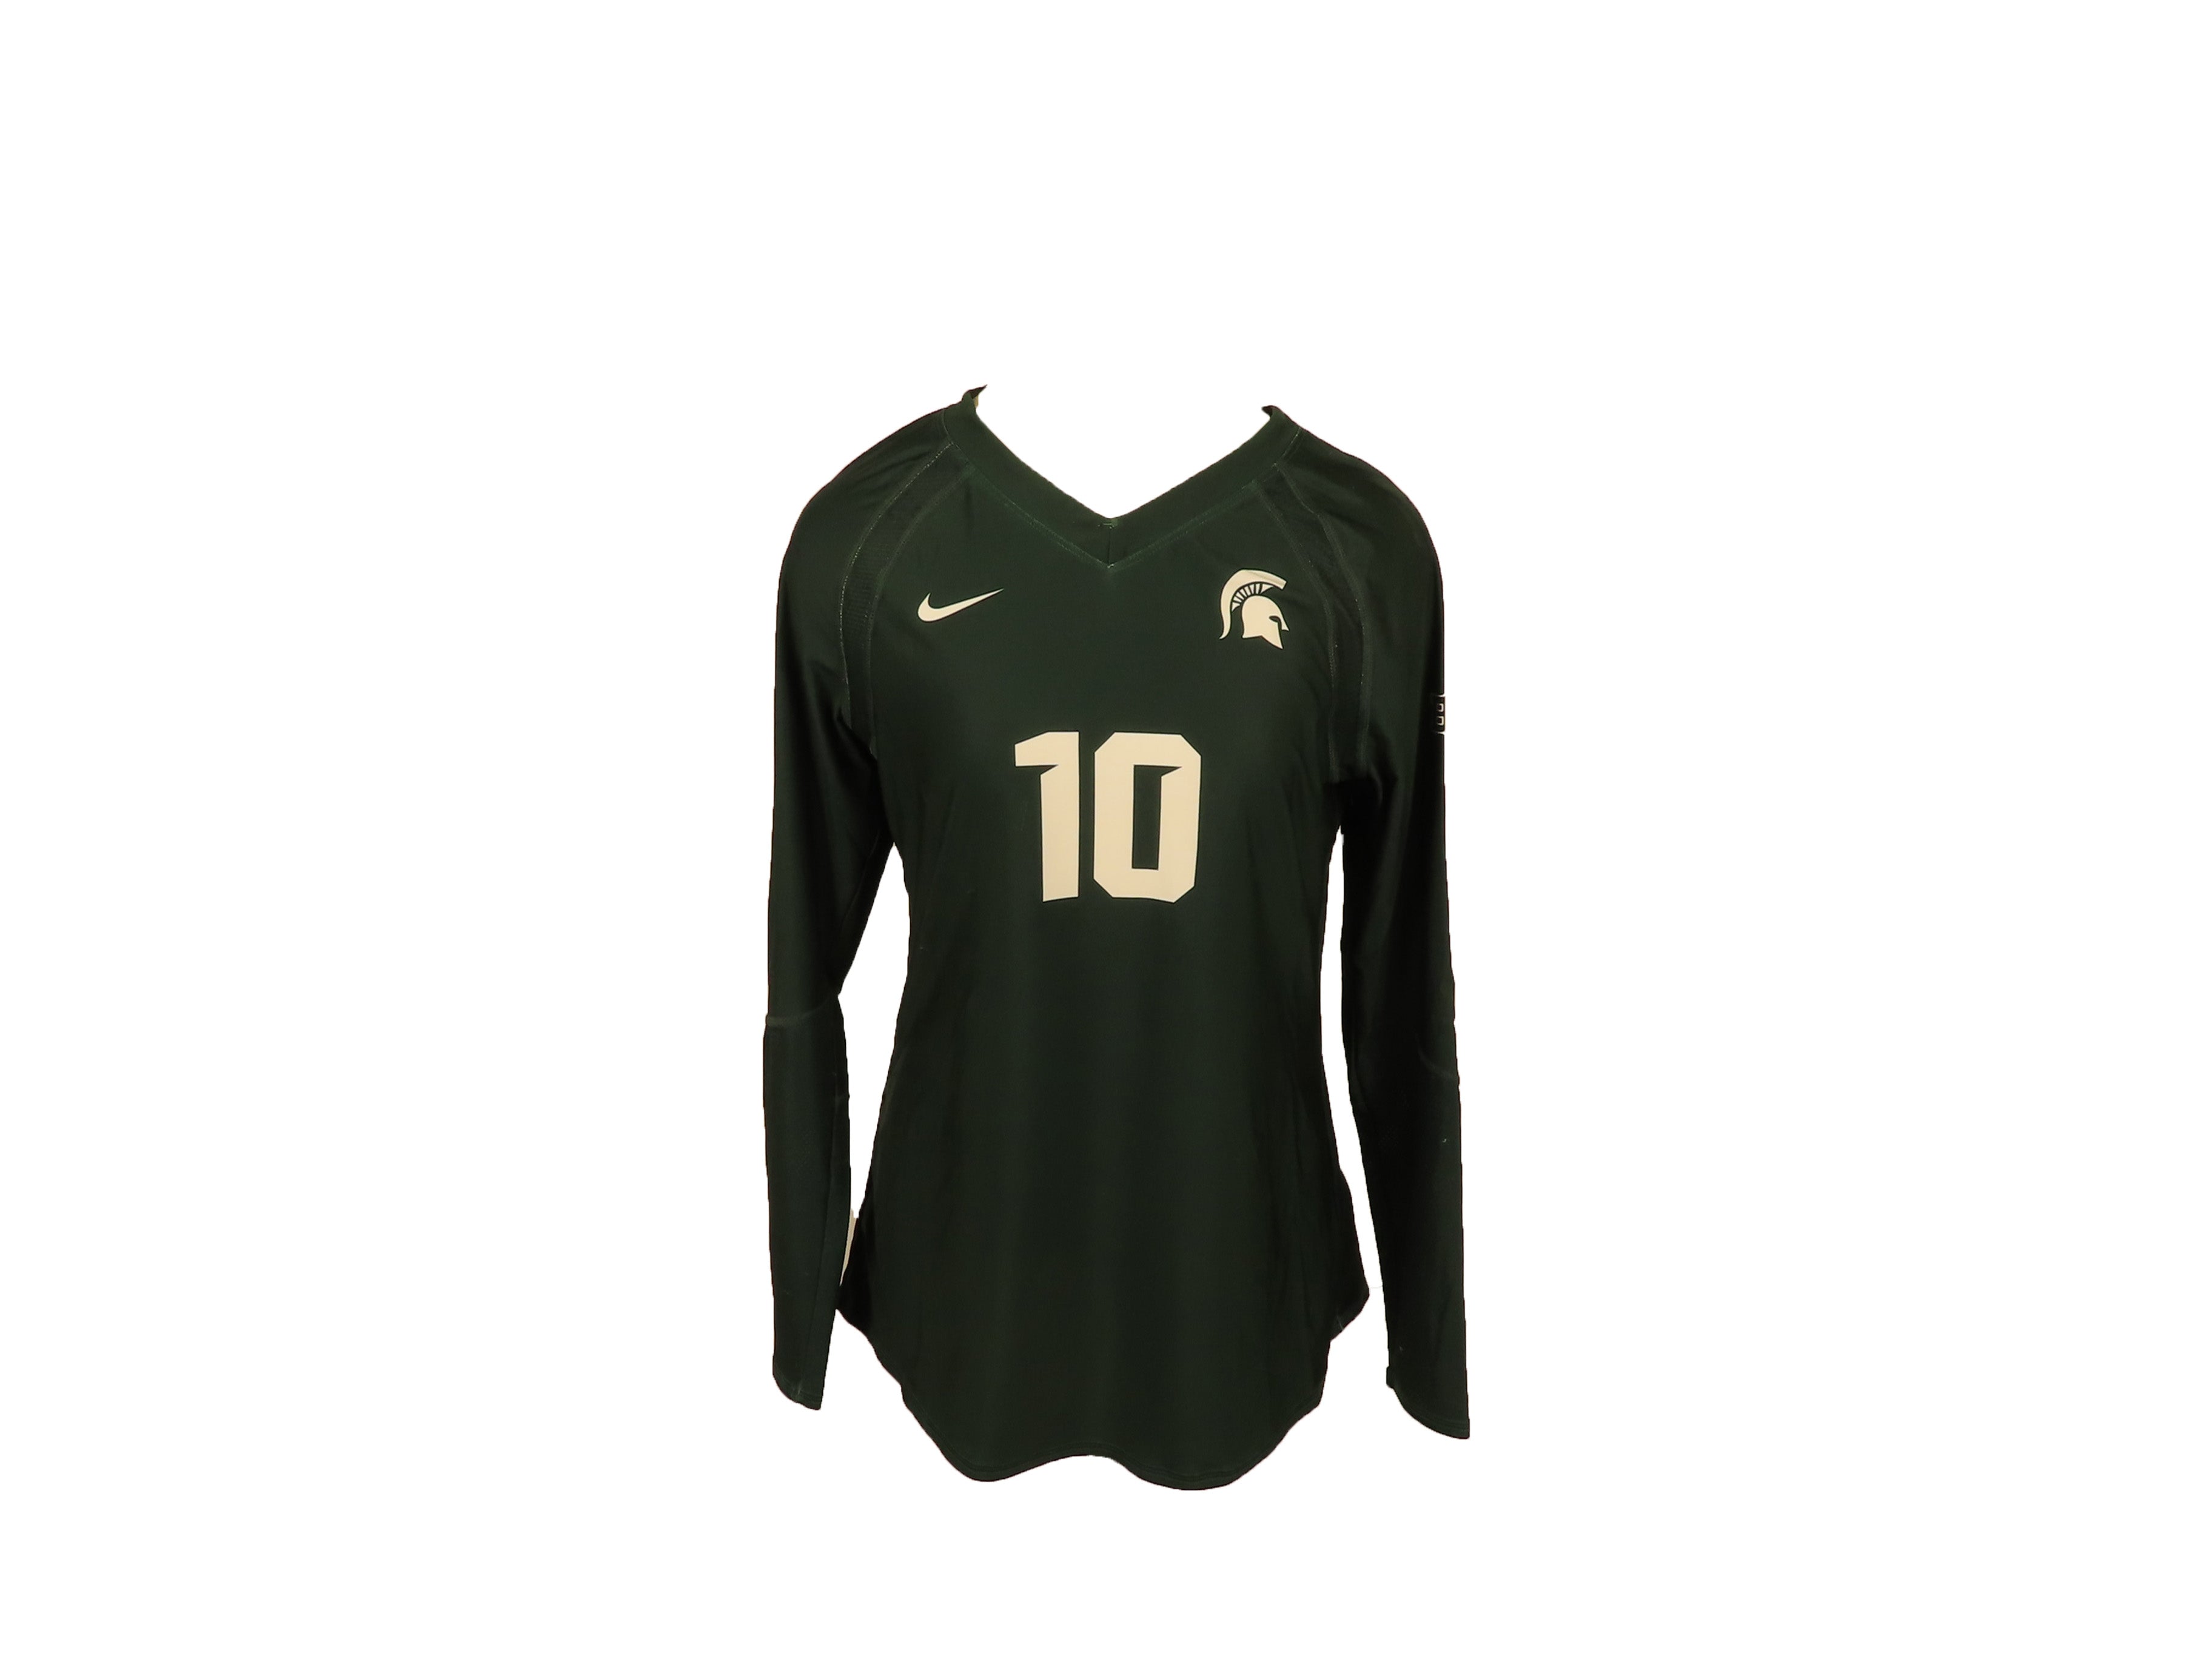 Nike Green Long Sleeve MSU Volleyball #10 Jersey Women's L – MSU Surplus Store